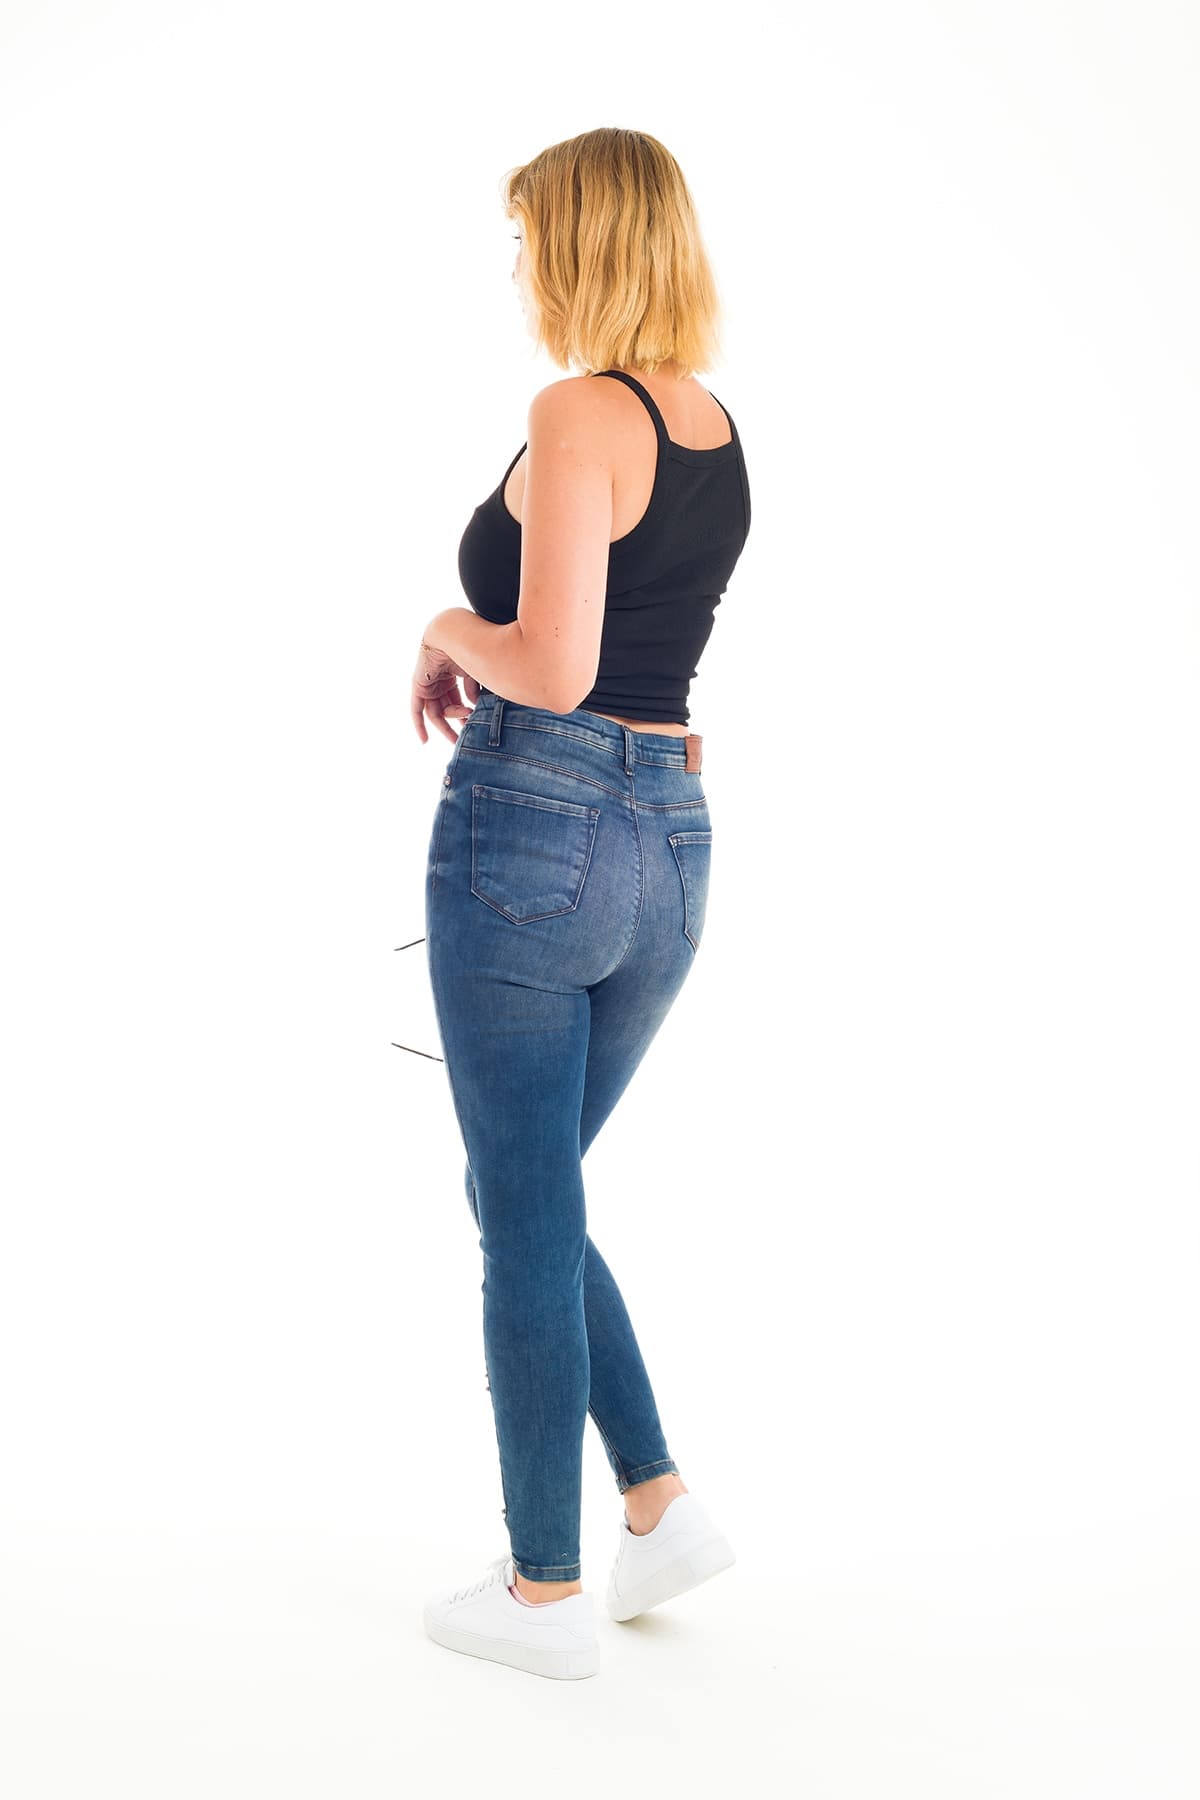 Desperado 302 Eskitme Model Boncuklu İşleme Detaylı Kadın Kot Pantolon